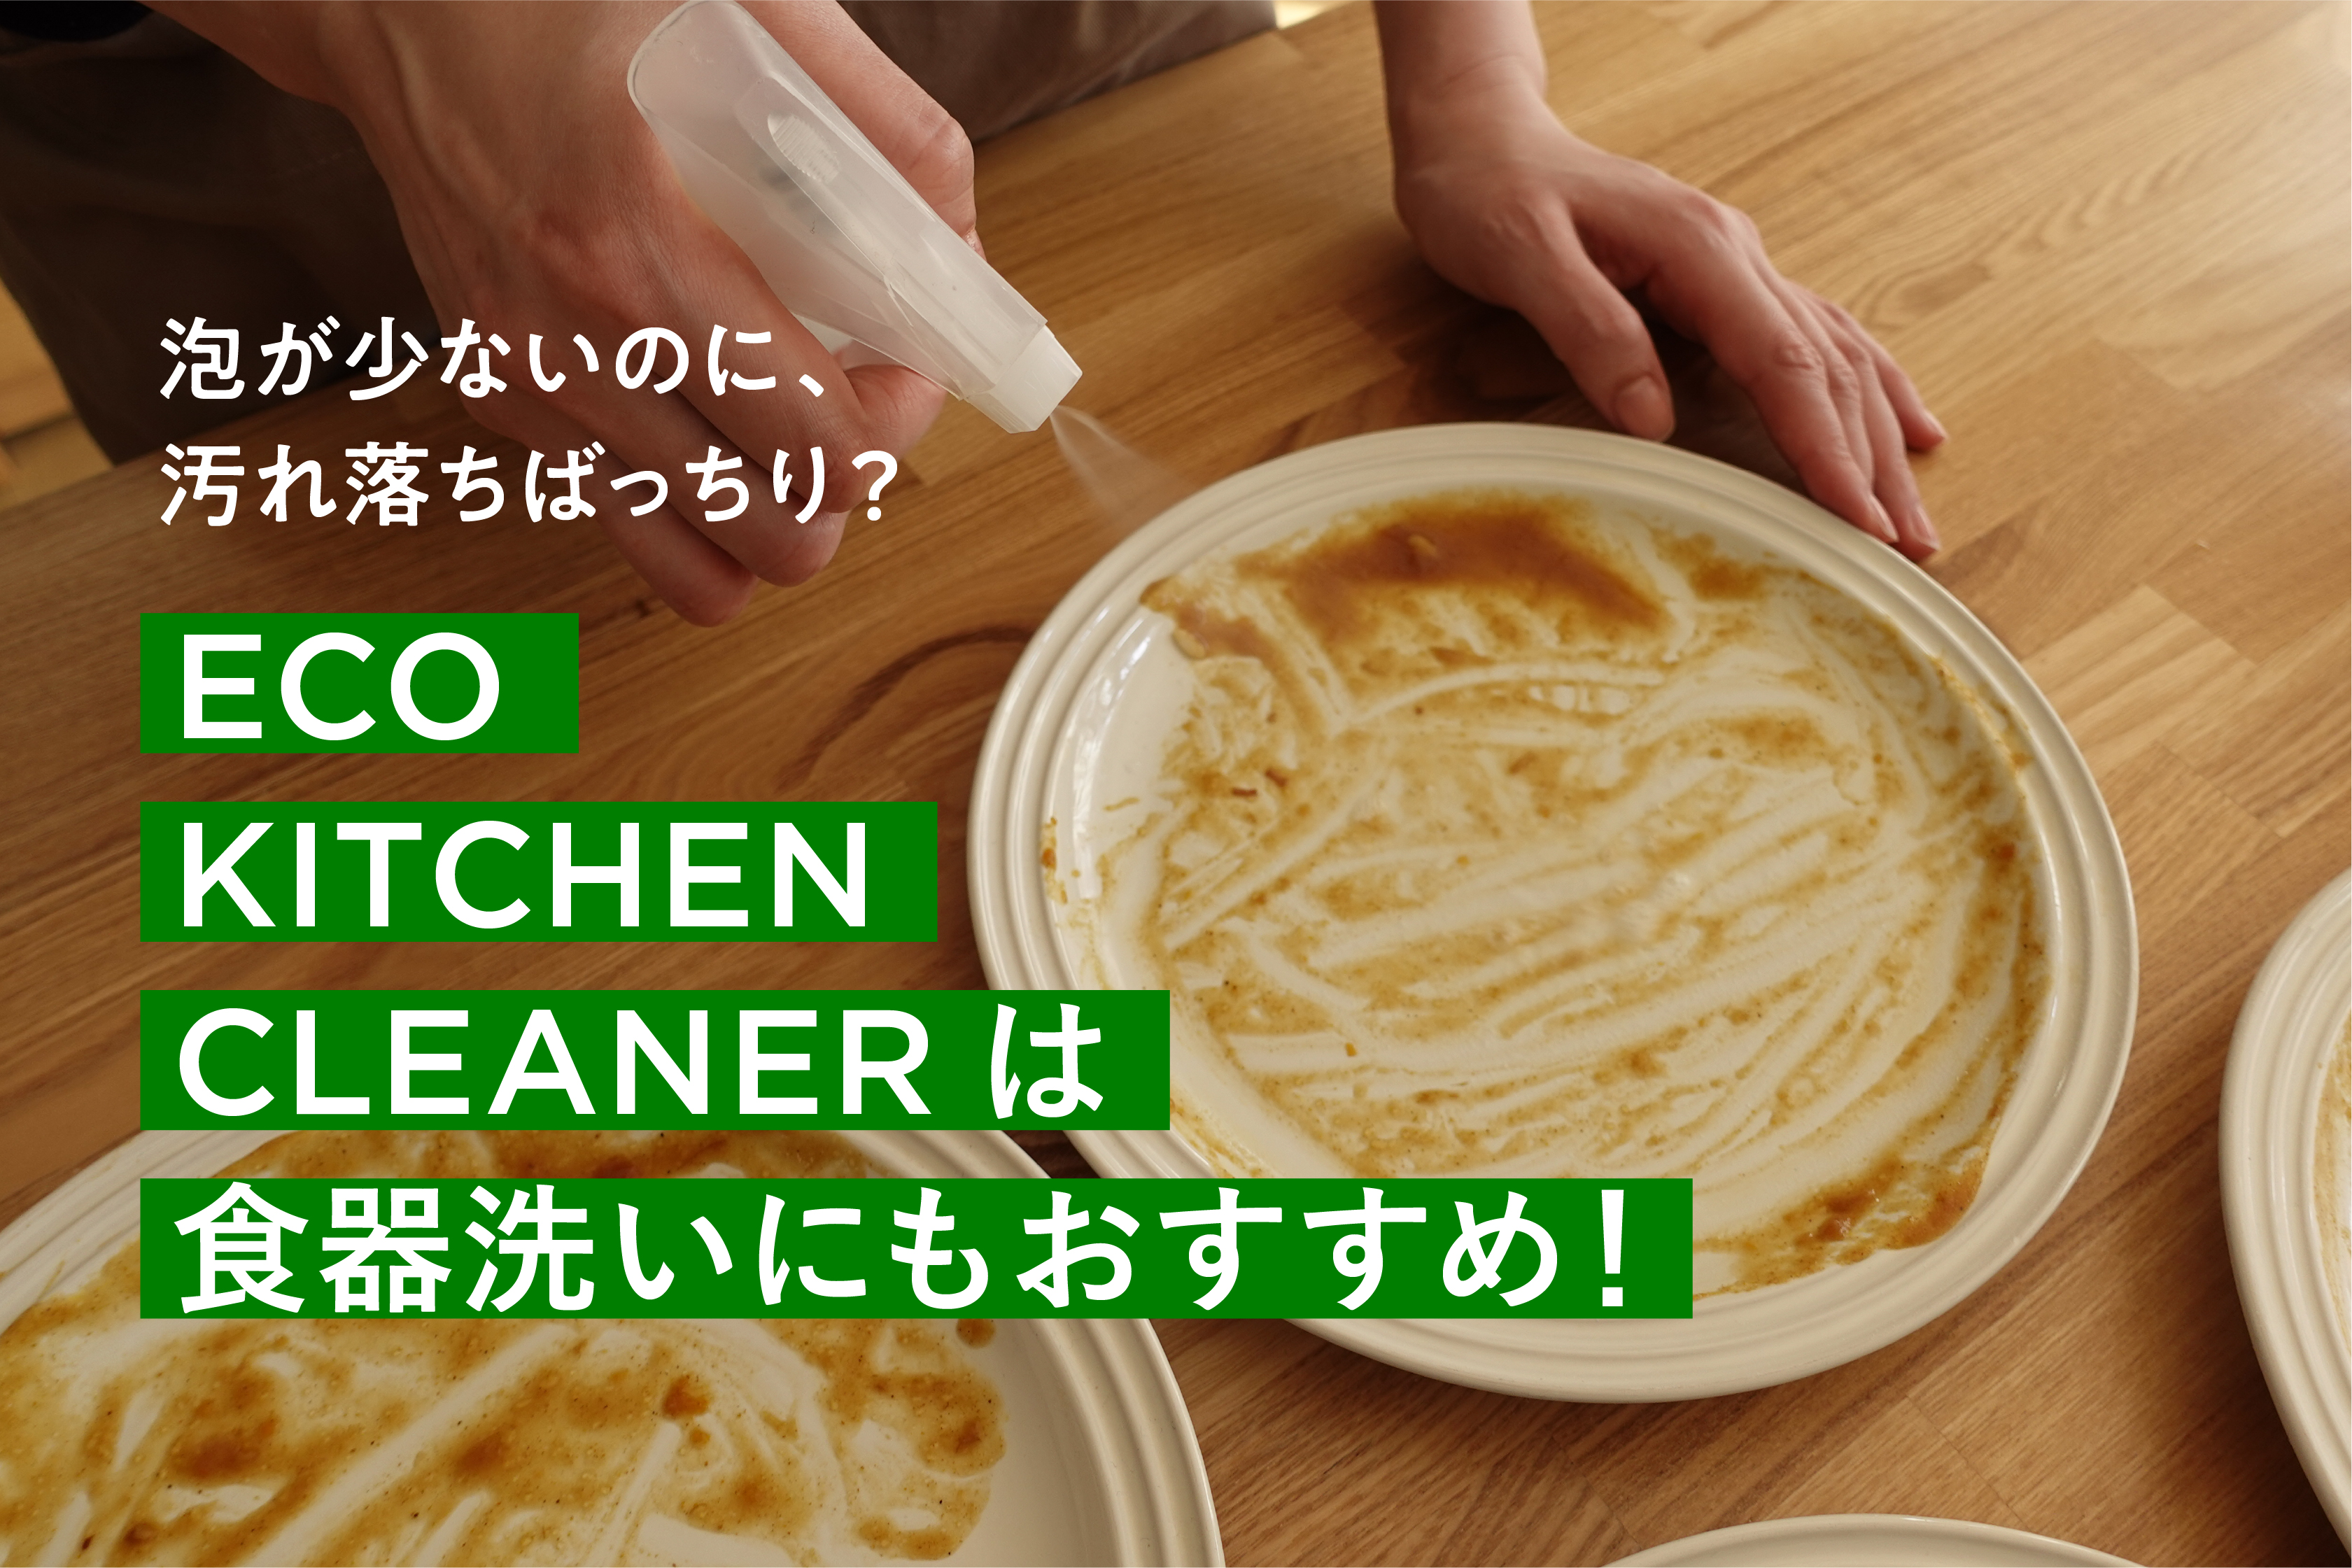 ECO KITCHEN CLEANERは、食器洗いにもおすすめ！